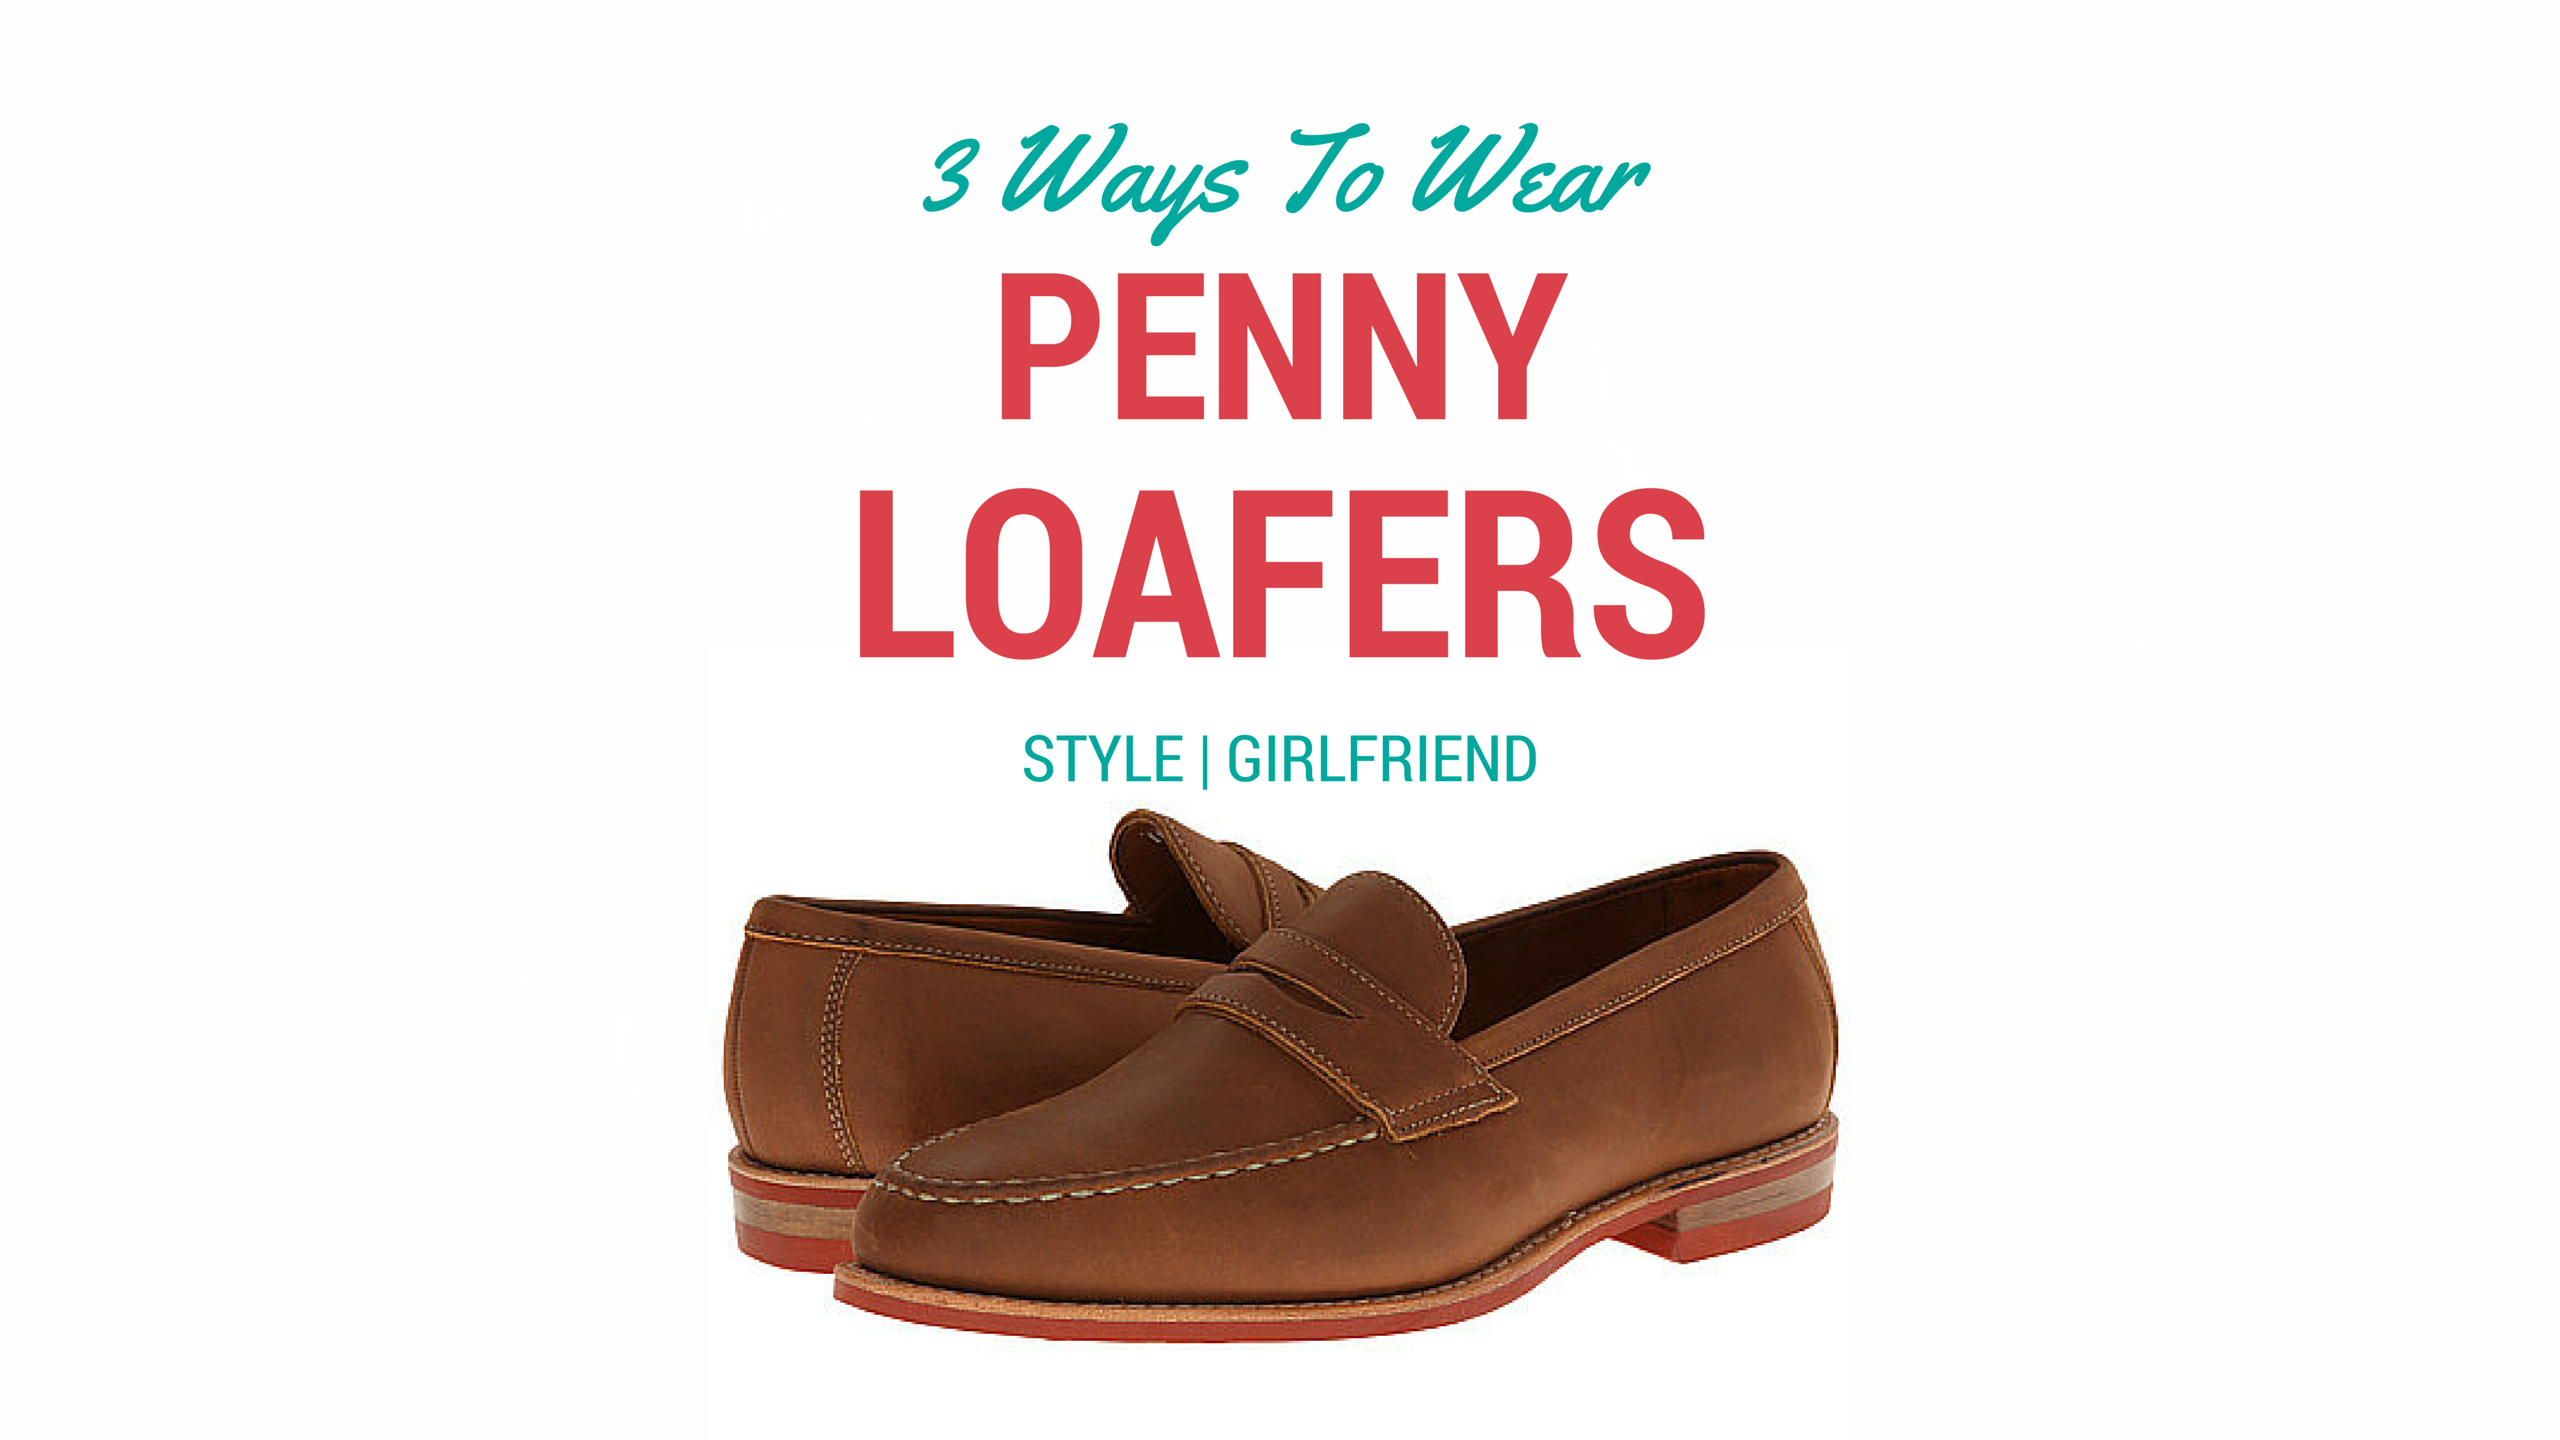 Wear It Well: 3 Ways to Wear Penny Loafers for Summer | Style Girlfriend